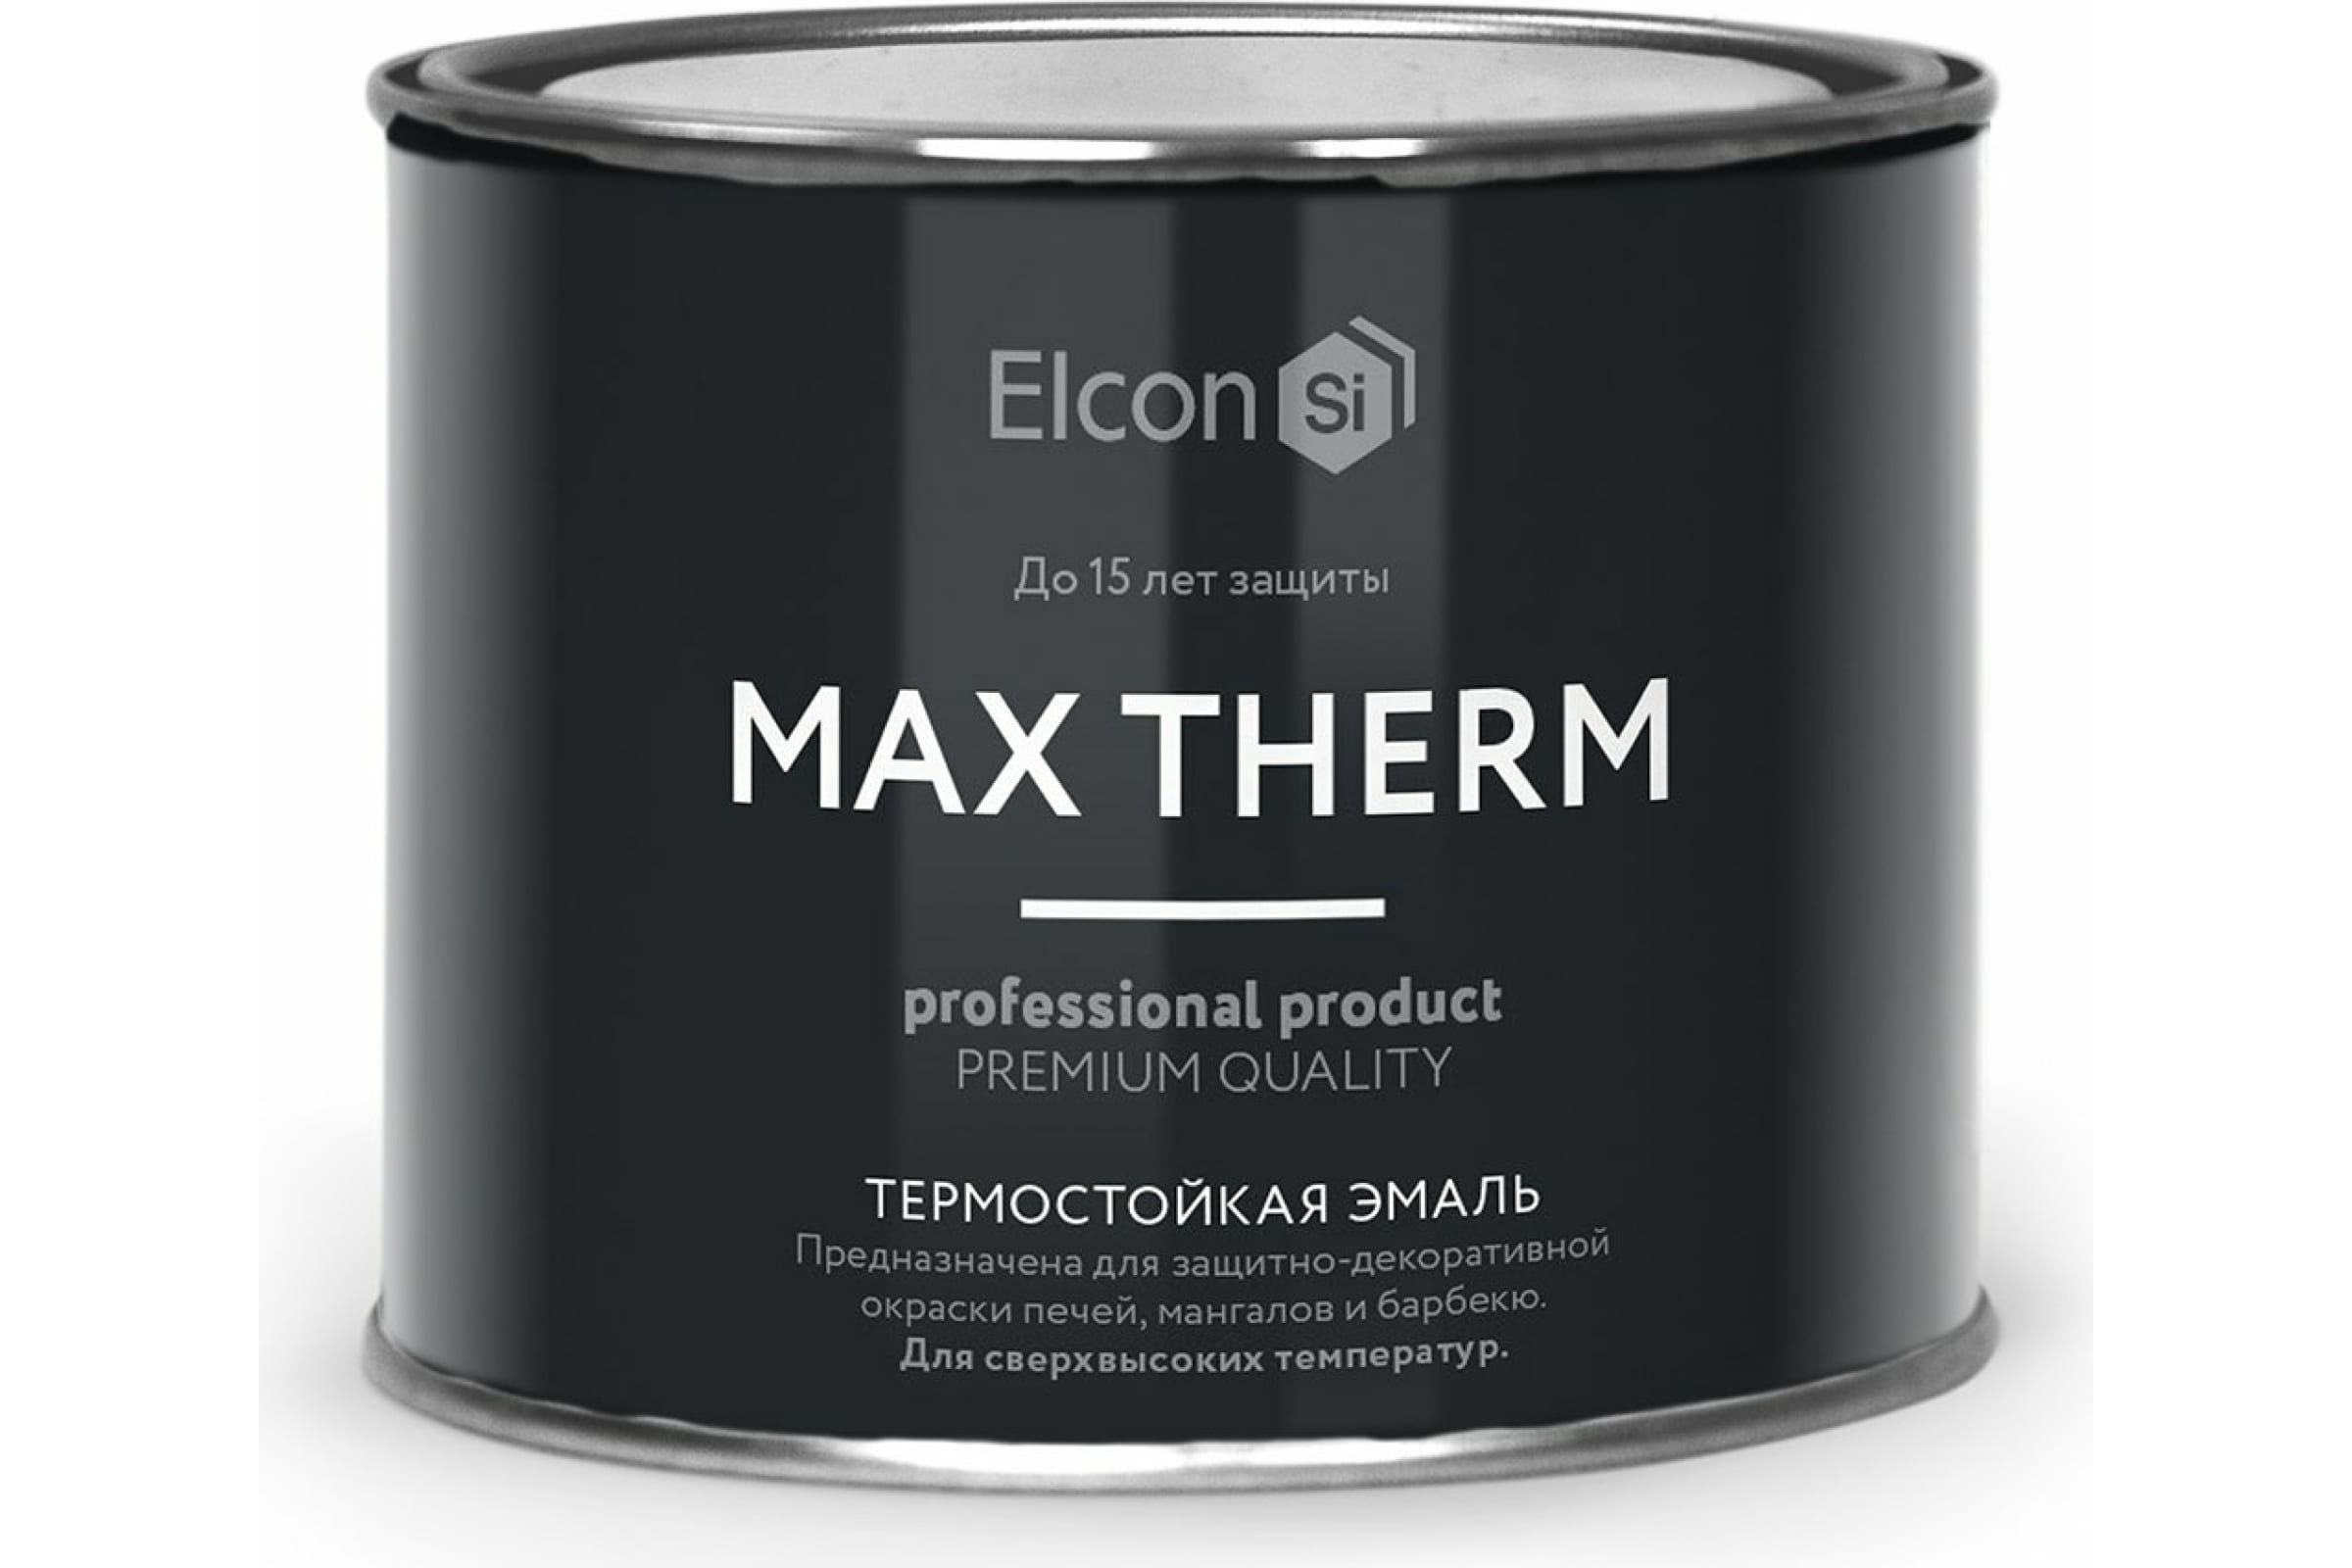 Термостойкая антикоррозионная эмаль Elcon Max Therm до 400 градусов, 0,4 л, ярко-красная термостойкая антикоррозионная эмаль elcon max therm до 400 градусов 0 4 л коричневая